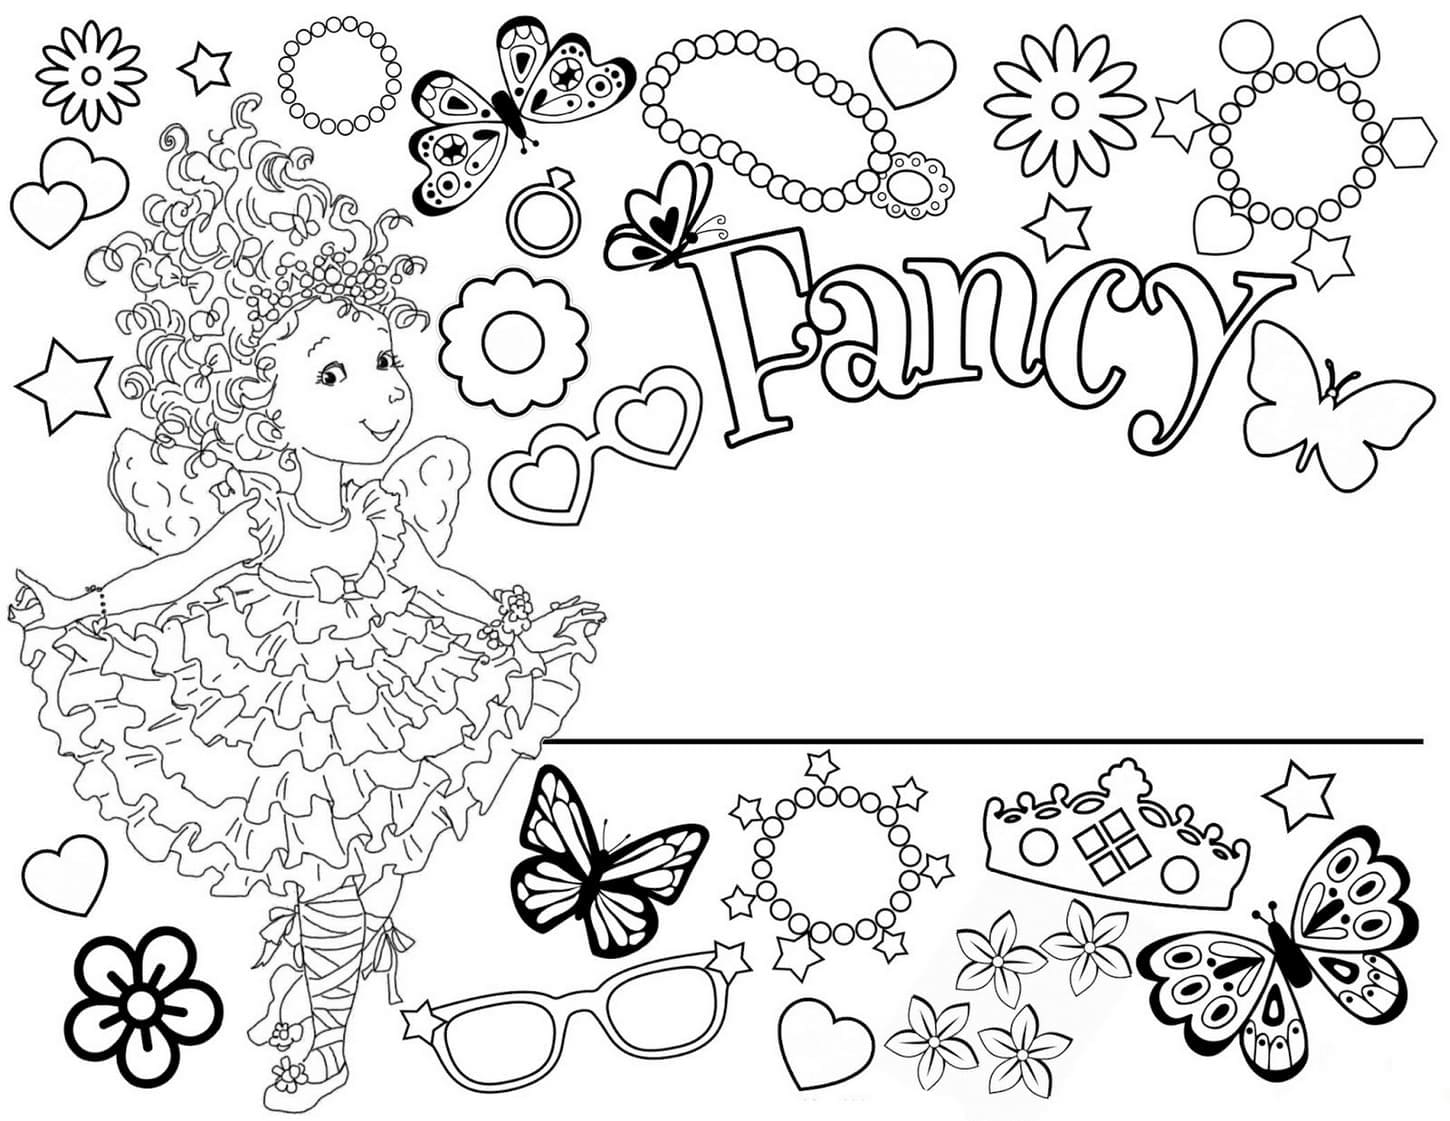 Joyeux Fancy Nancy coloring page